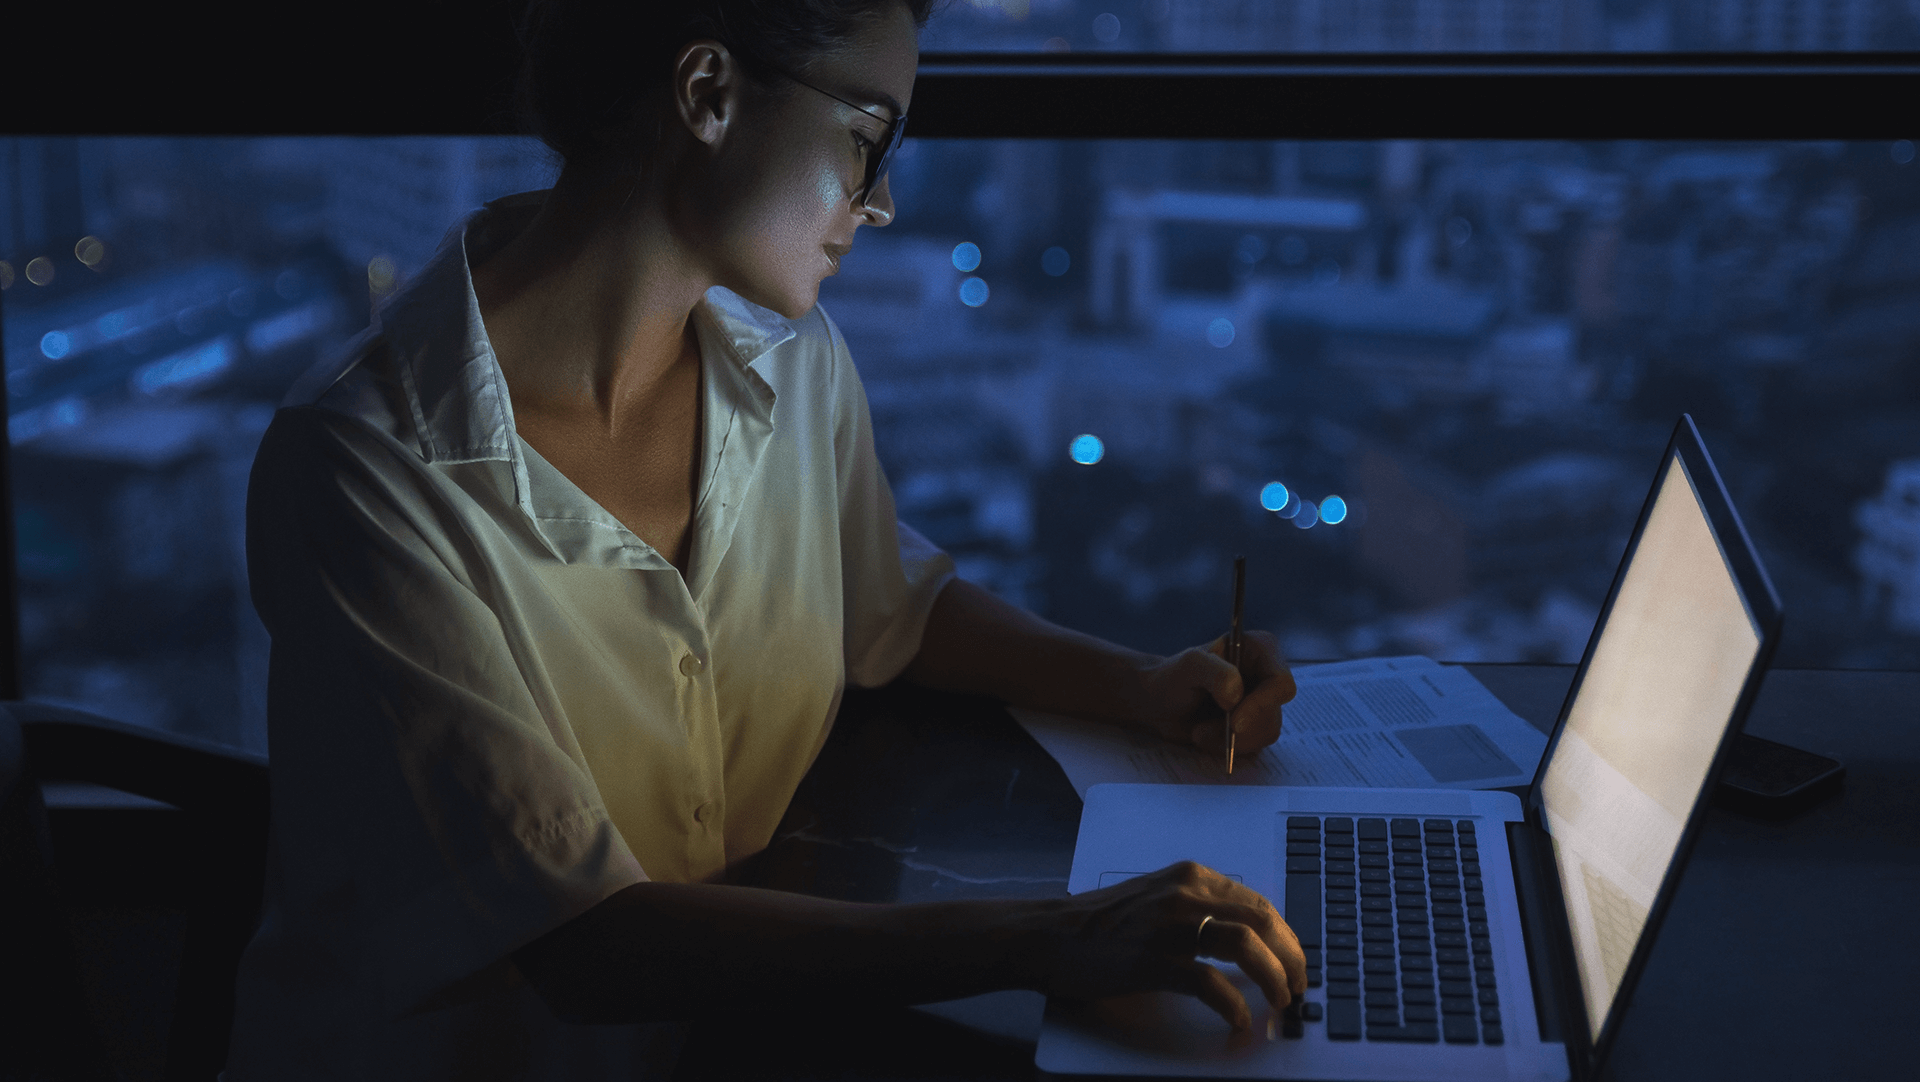 Woman upskilling at night at home